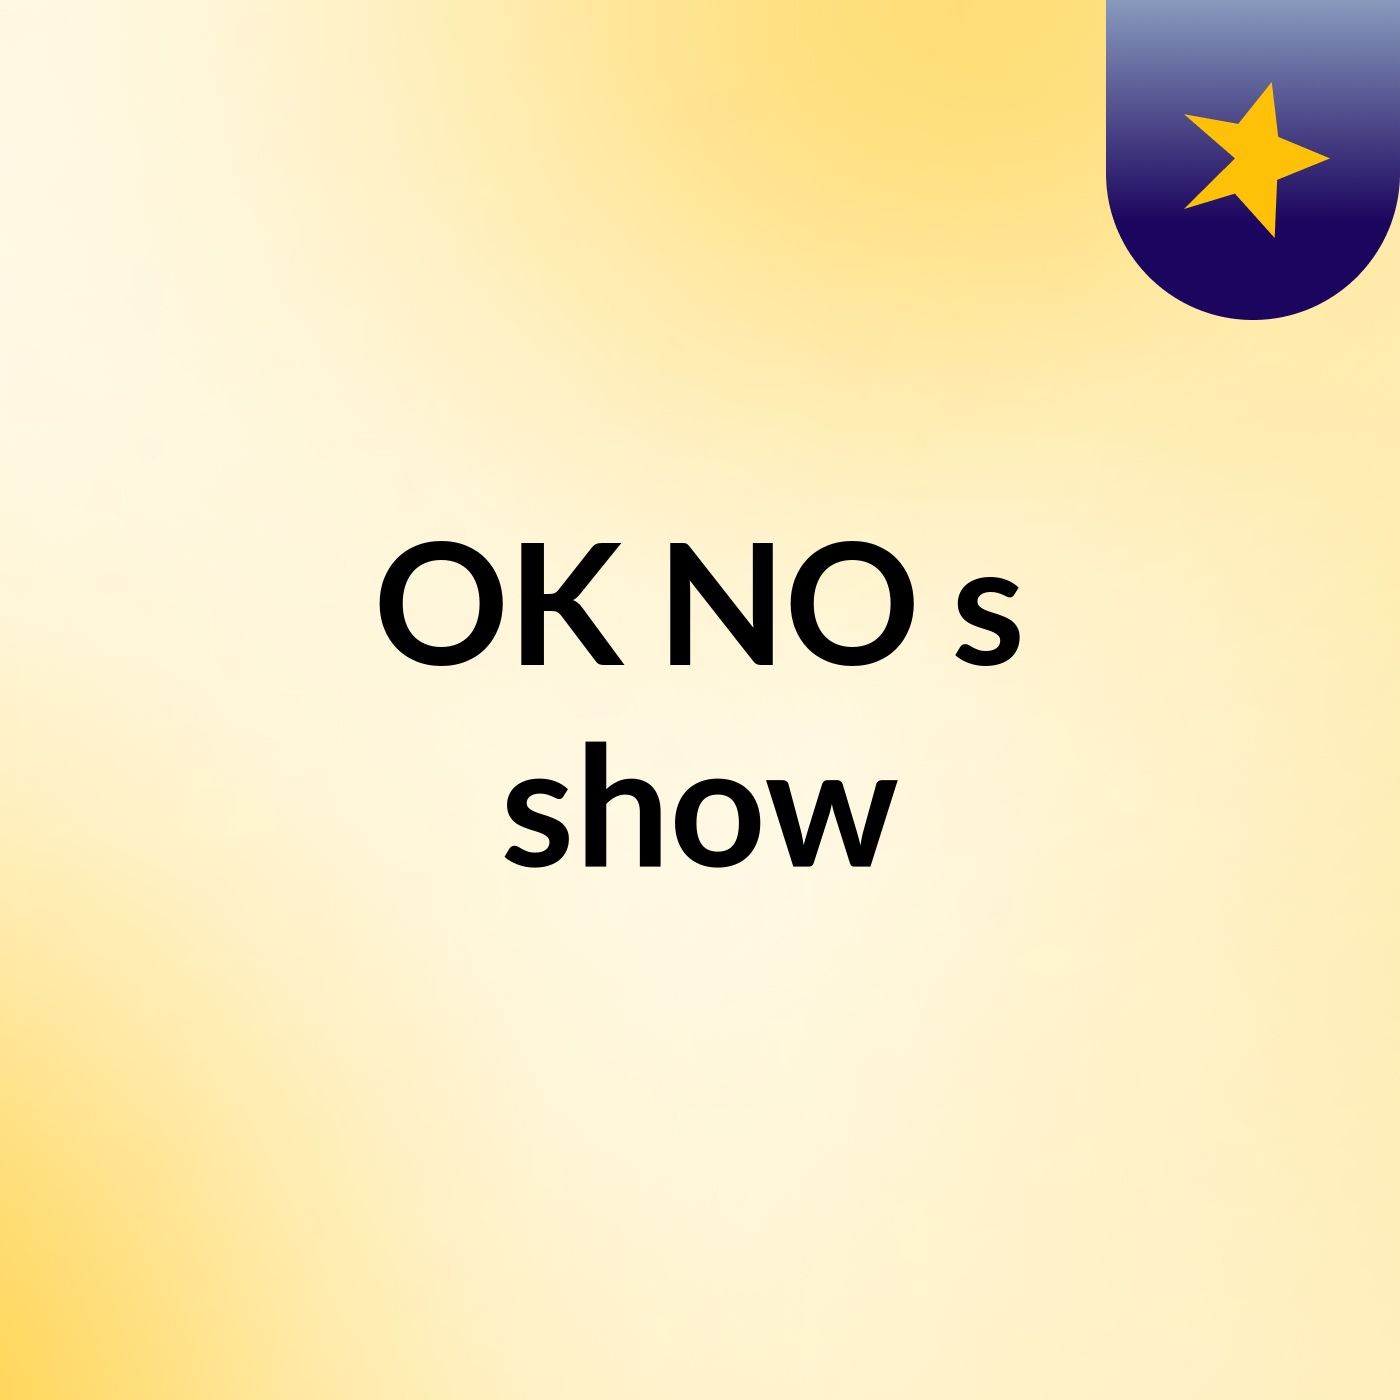 OK NO's show